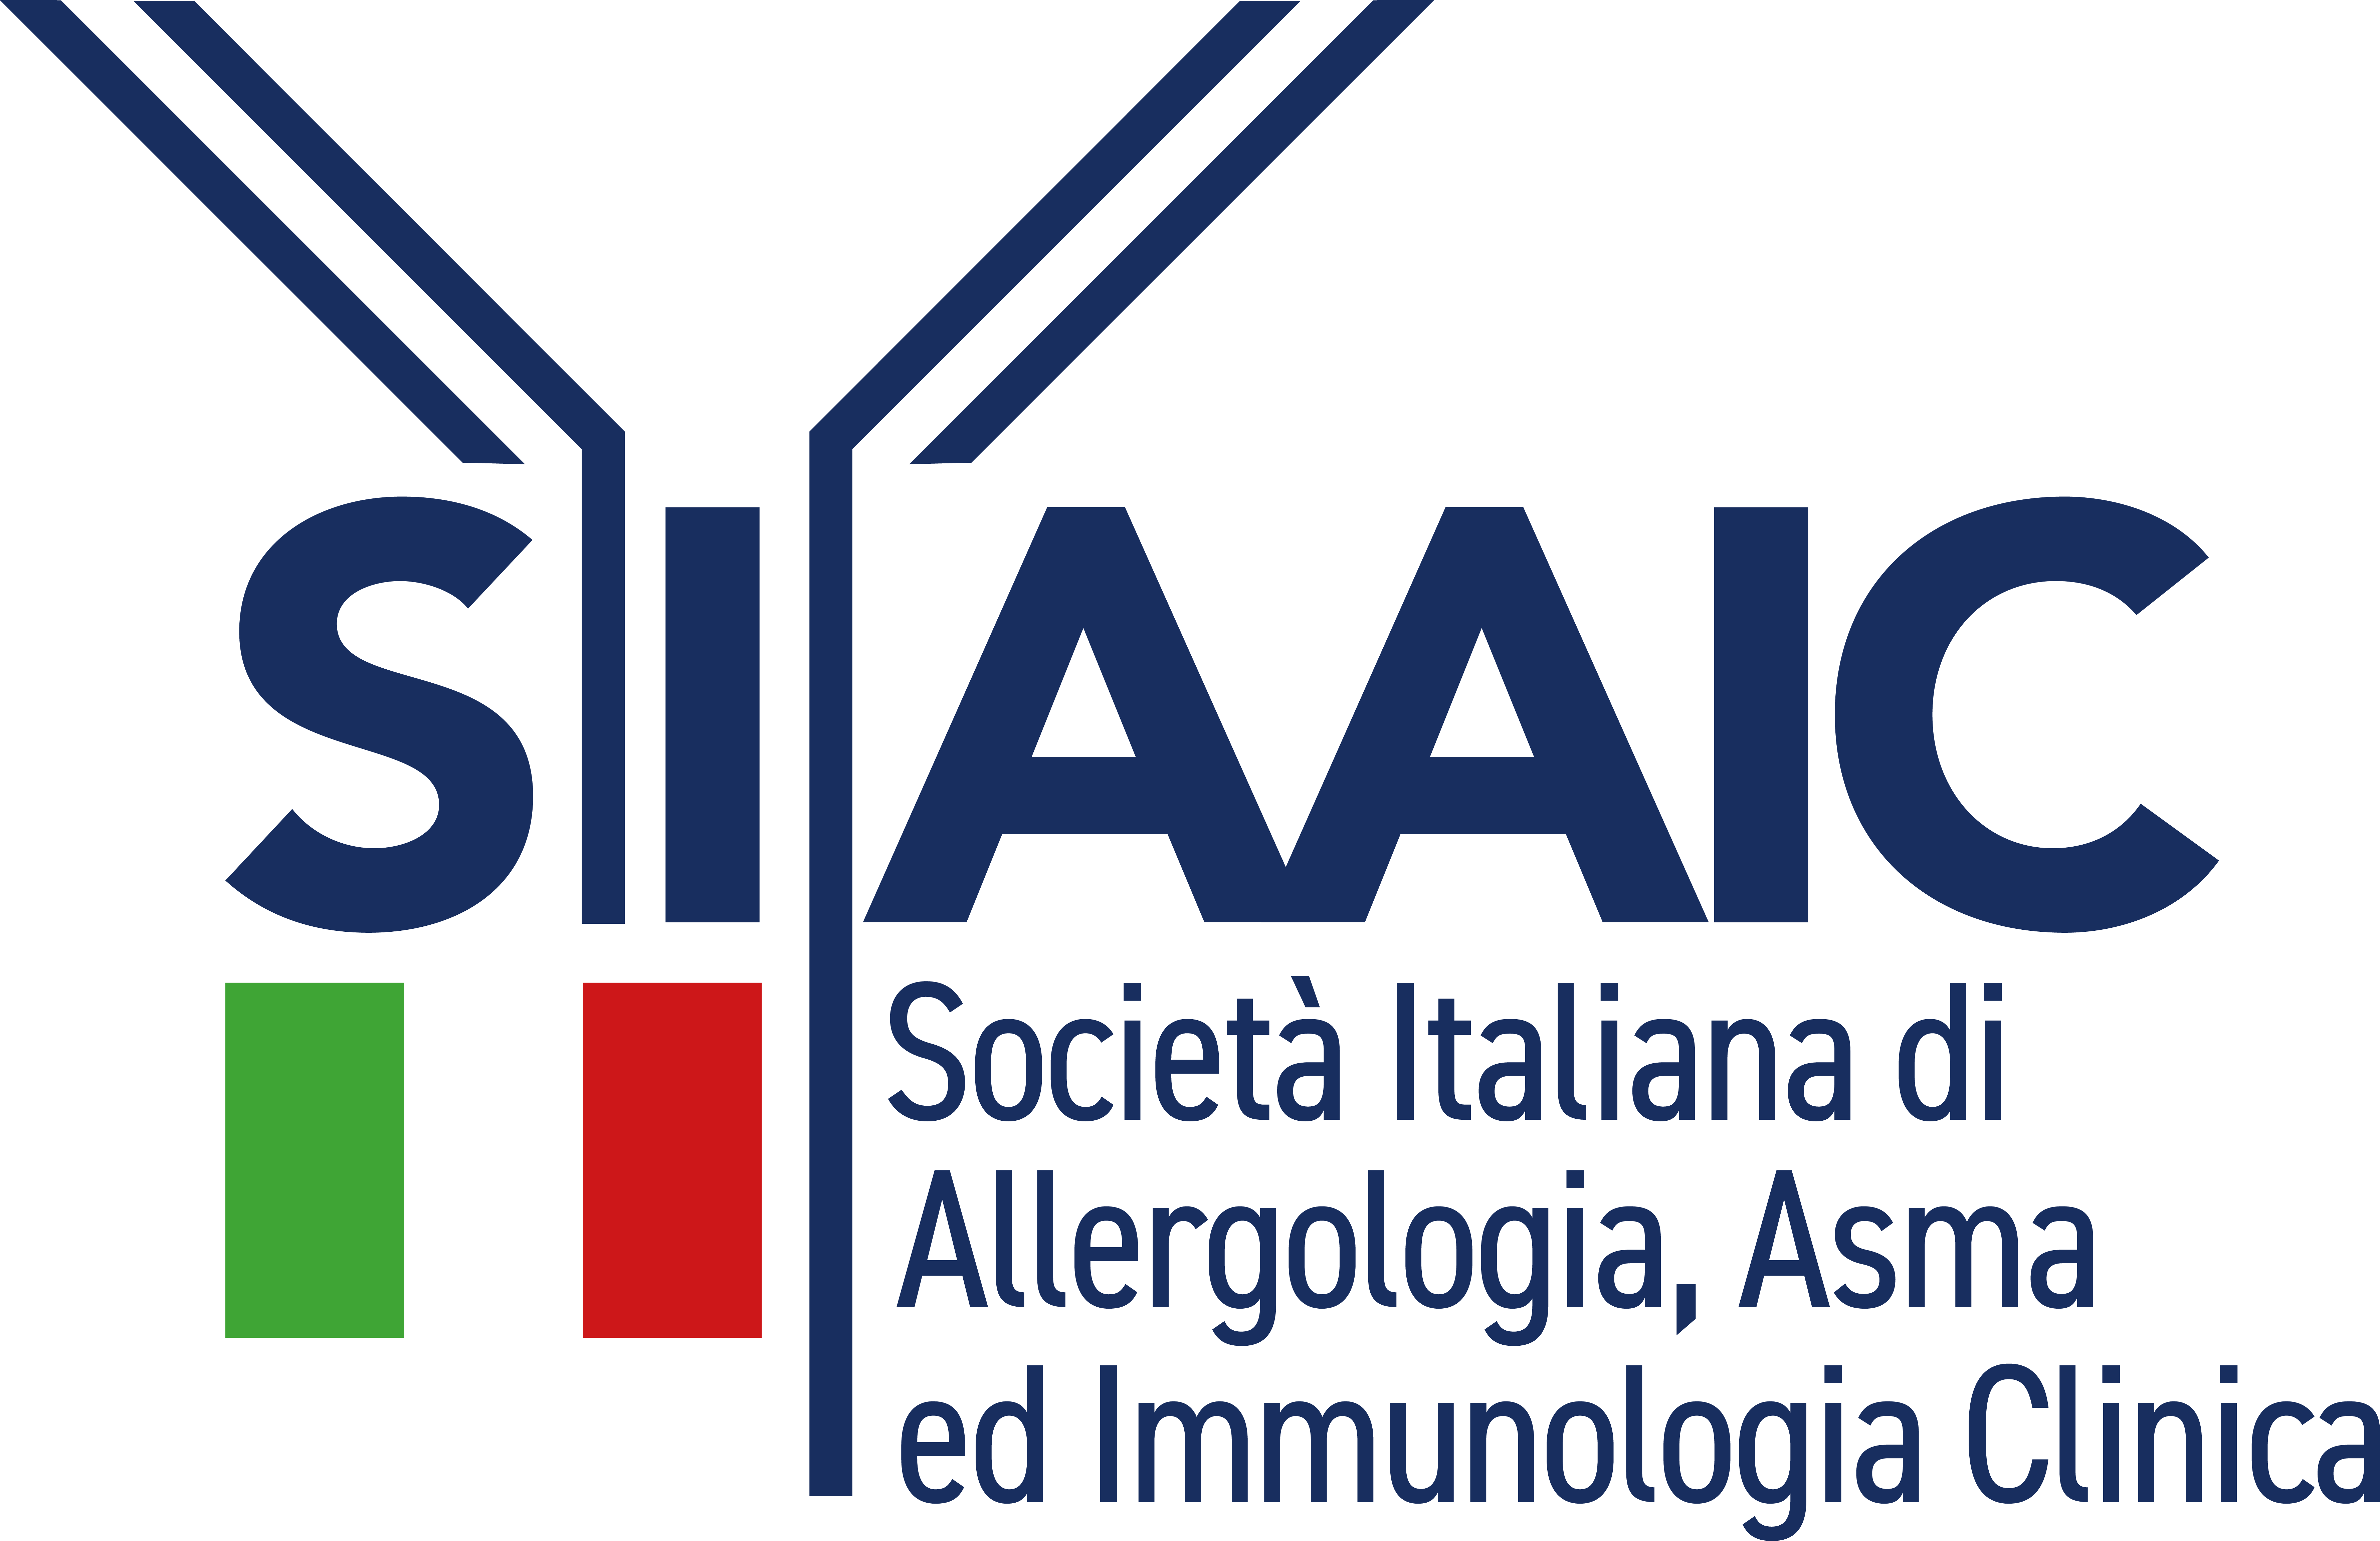 Società Italiana di Allergologia, Asma ed immunologia Clinica